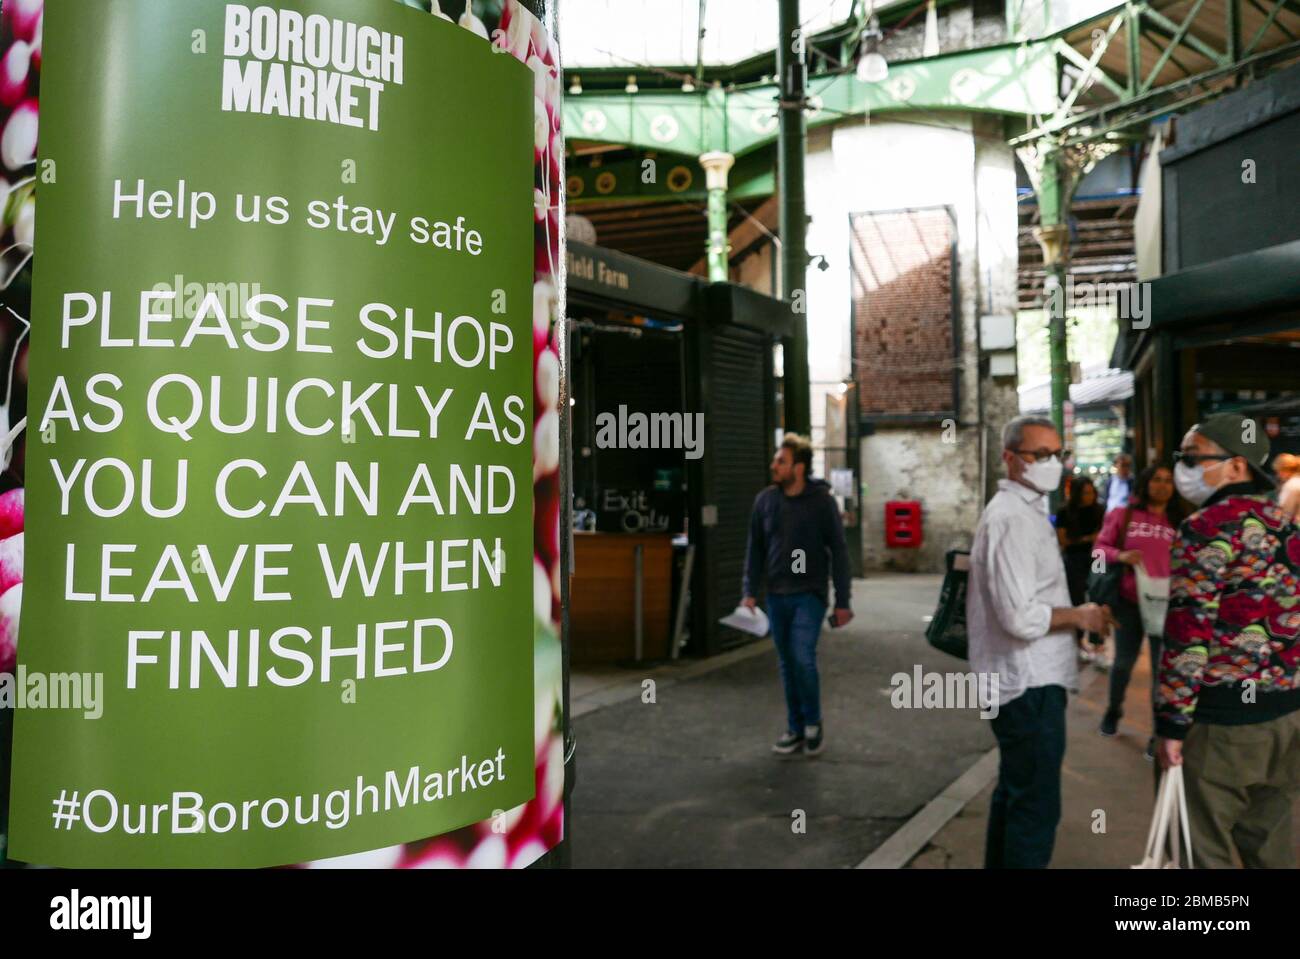 Londres, 2 mai 2020: Les gens magasinent à Borough Market, London Bridge, Londres. Shopping pendant les restrictions de virus Corona. Banque D'Images